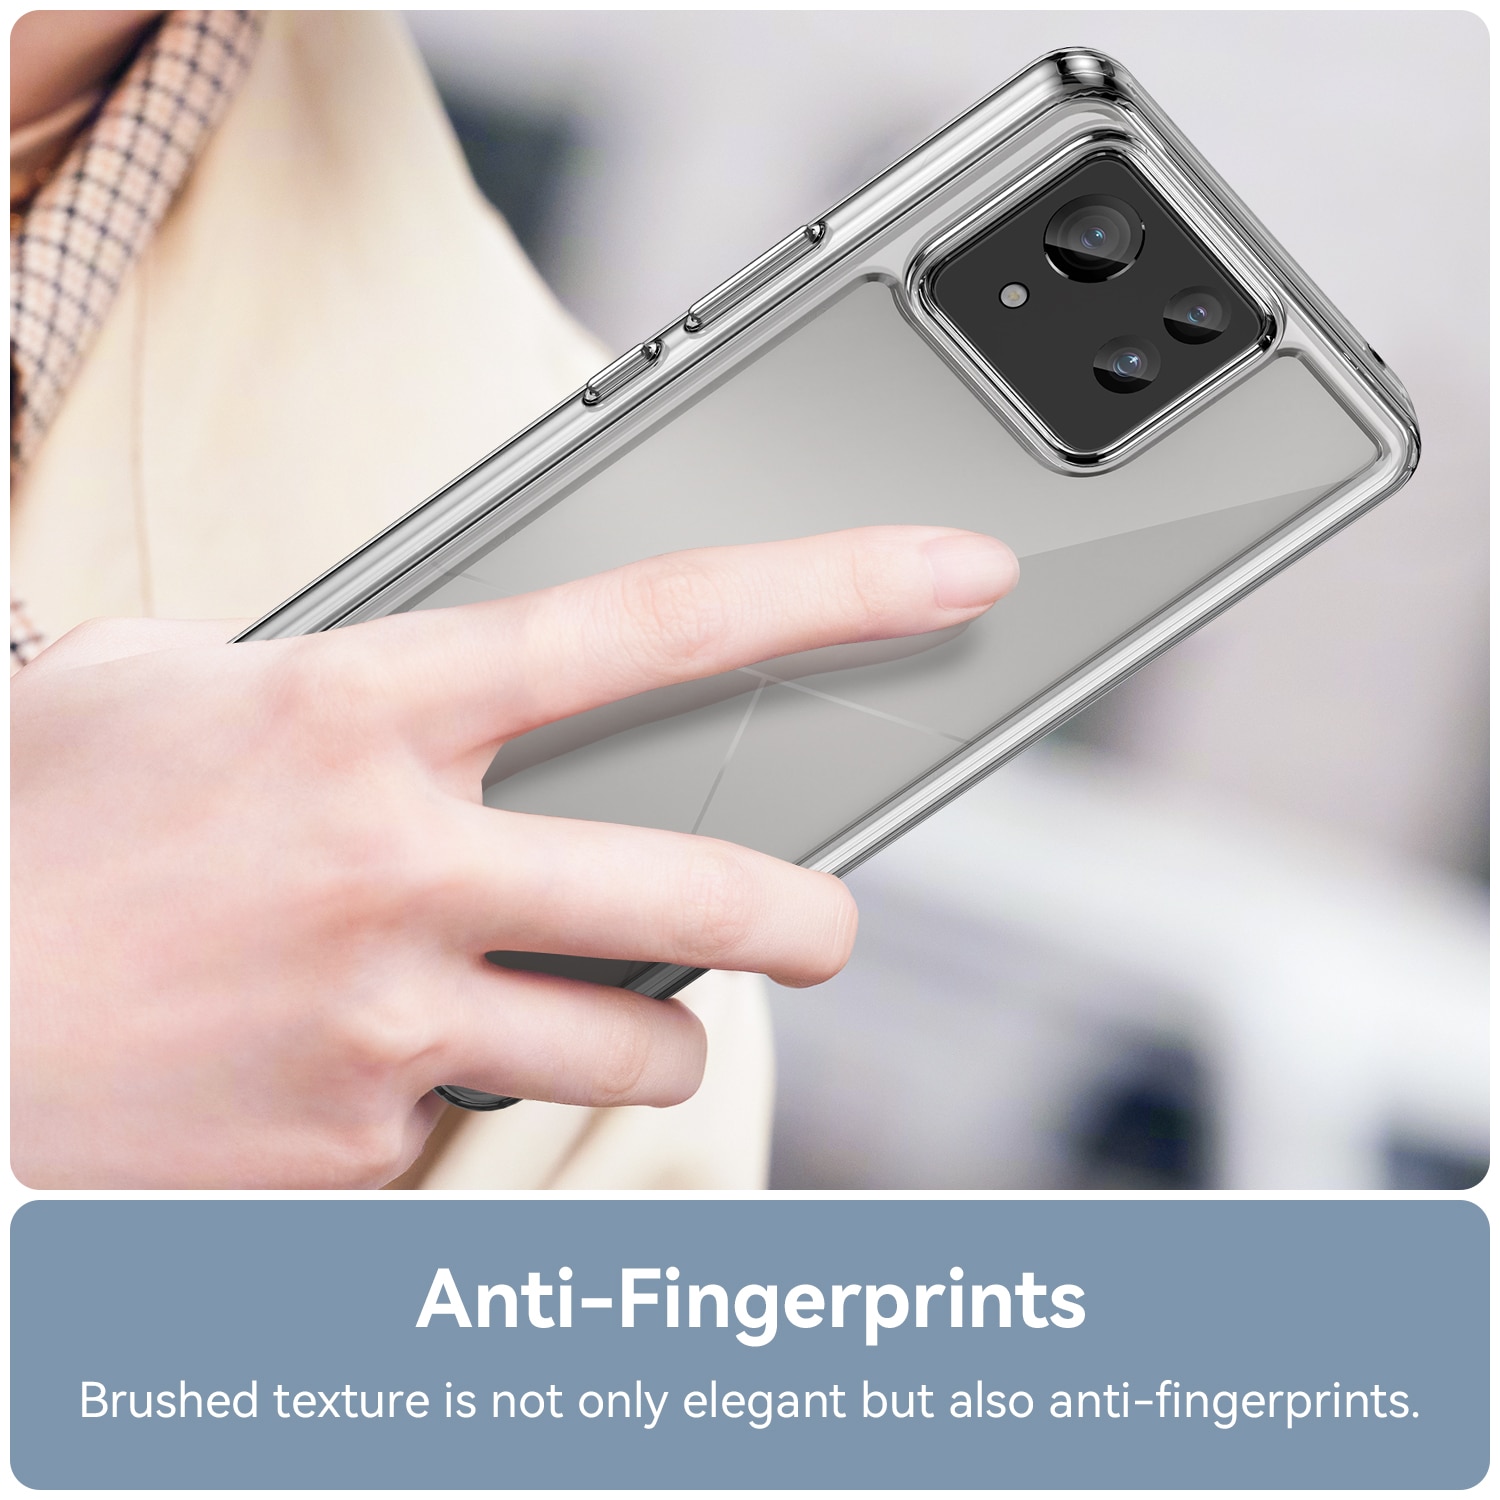 Crystal Hybrid Case Asus Zenfone 11 Ultra transparent